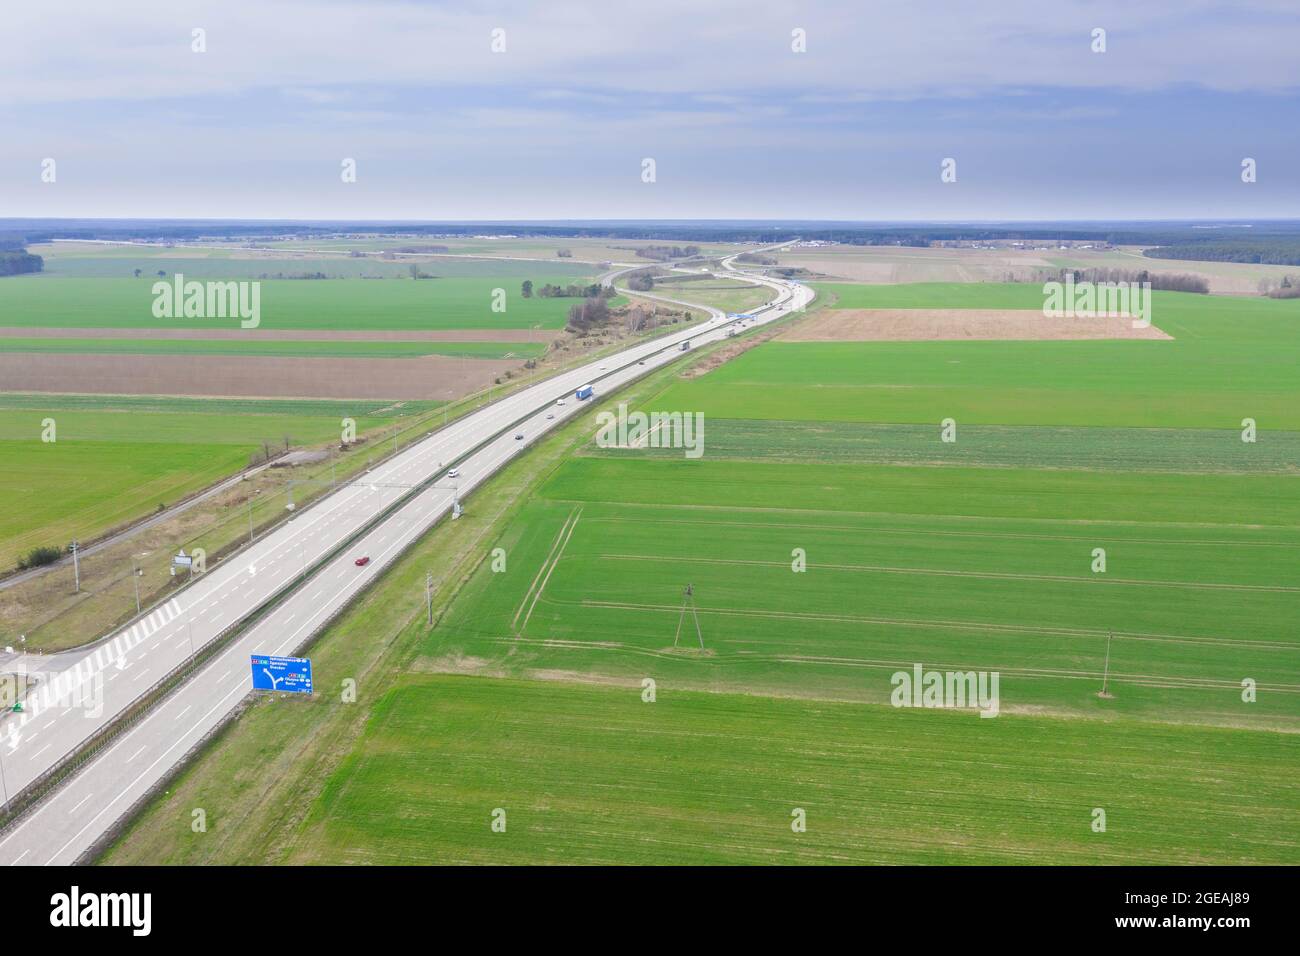 Die Autobahn von einer großen Höhe aus gesehen. Zwei graue Betonstraßen. An den Seiten befinden sich Felder. Foto von einer fliegenden Drohne. Stockfoto